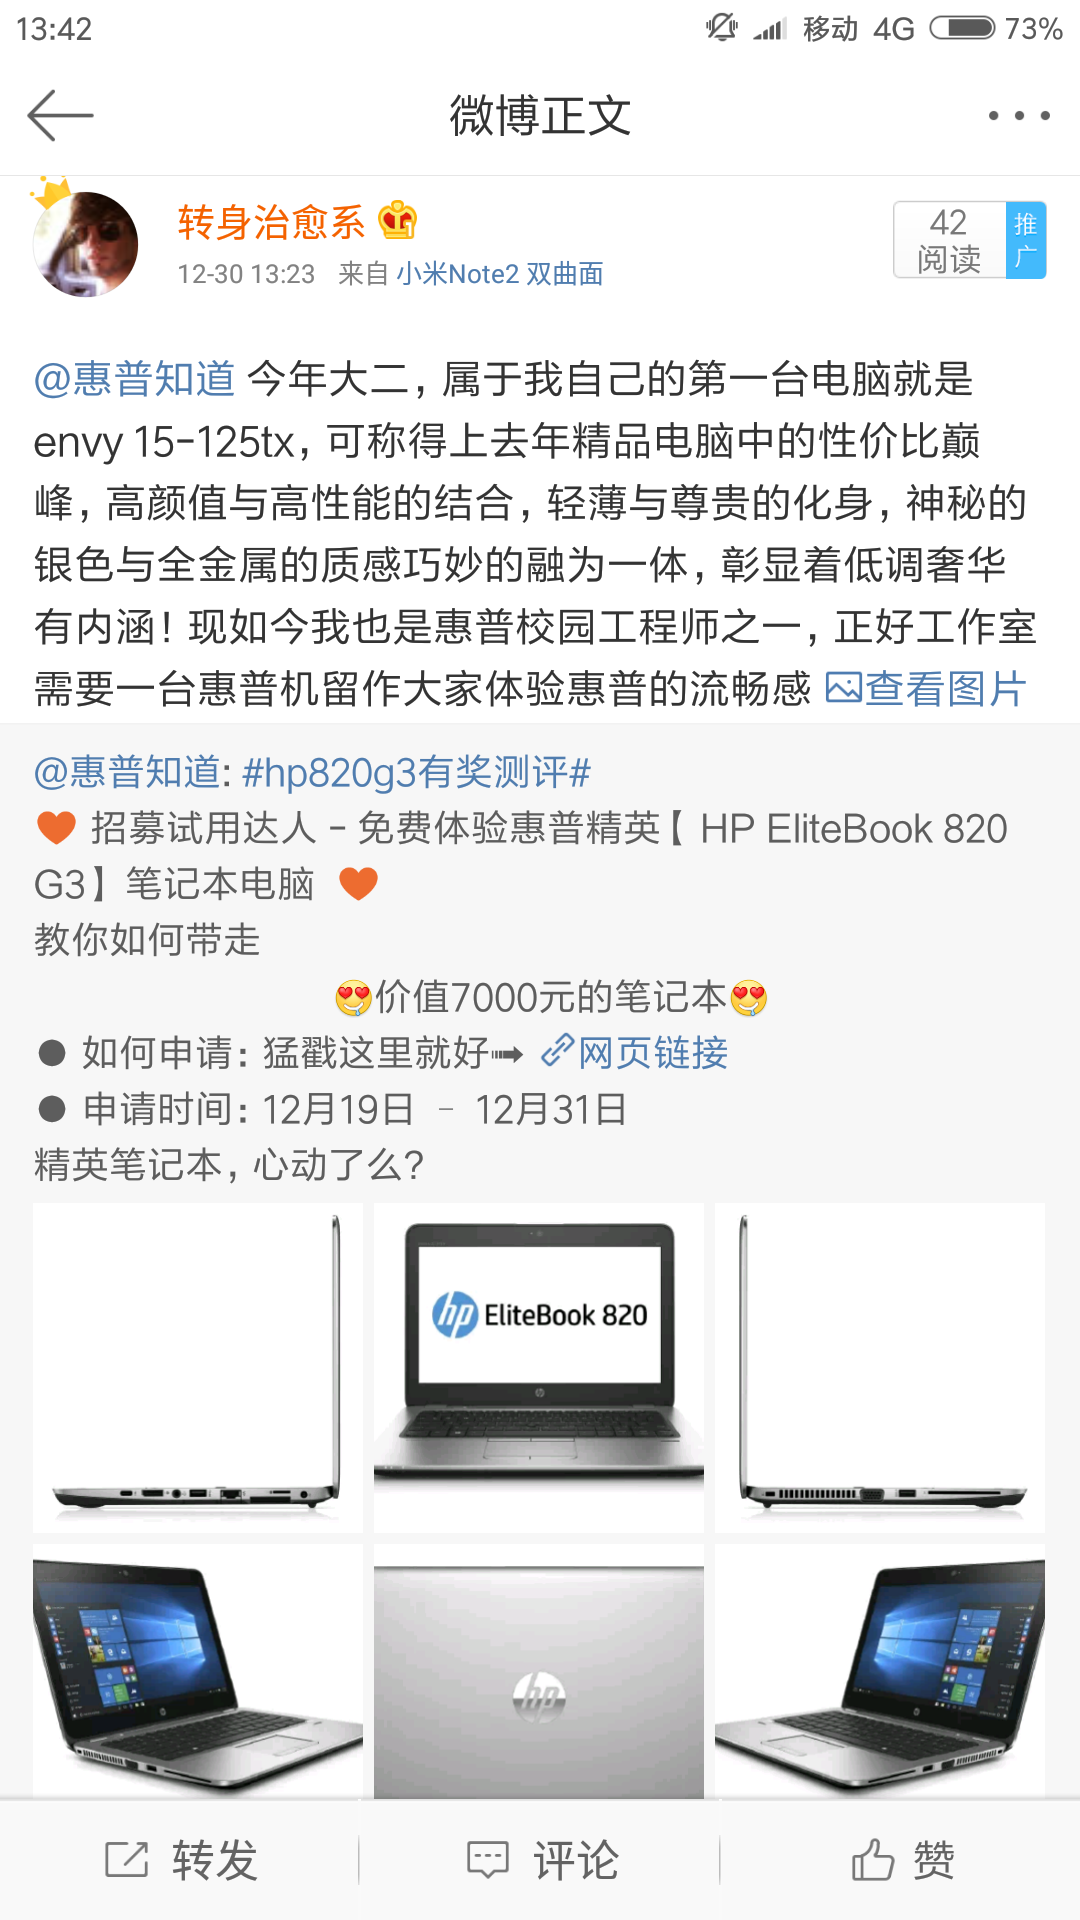 Screenshot_2016-12-30-13-43-34-407_com.sina.weibo.png